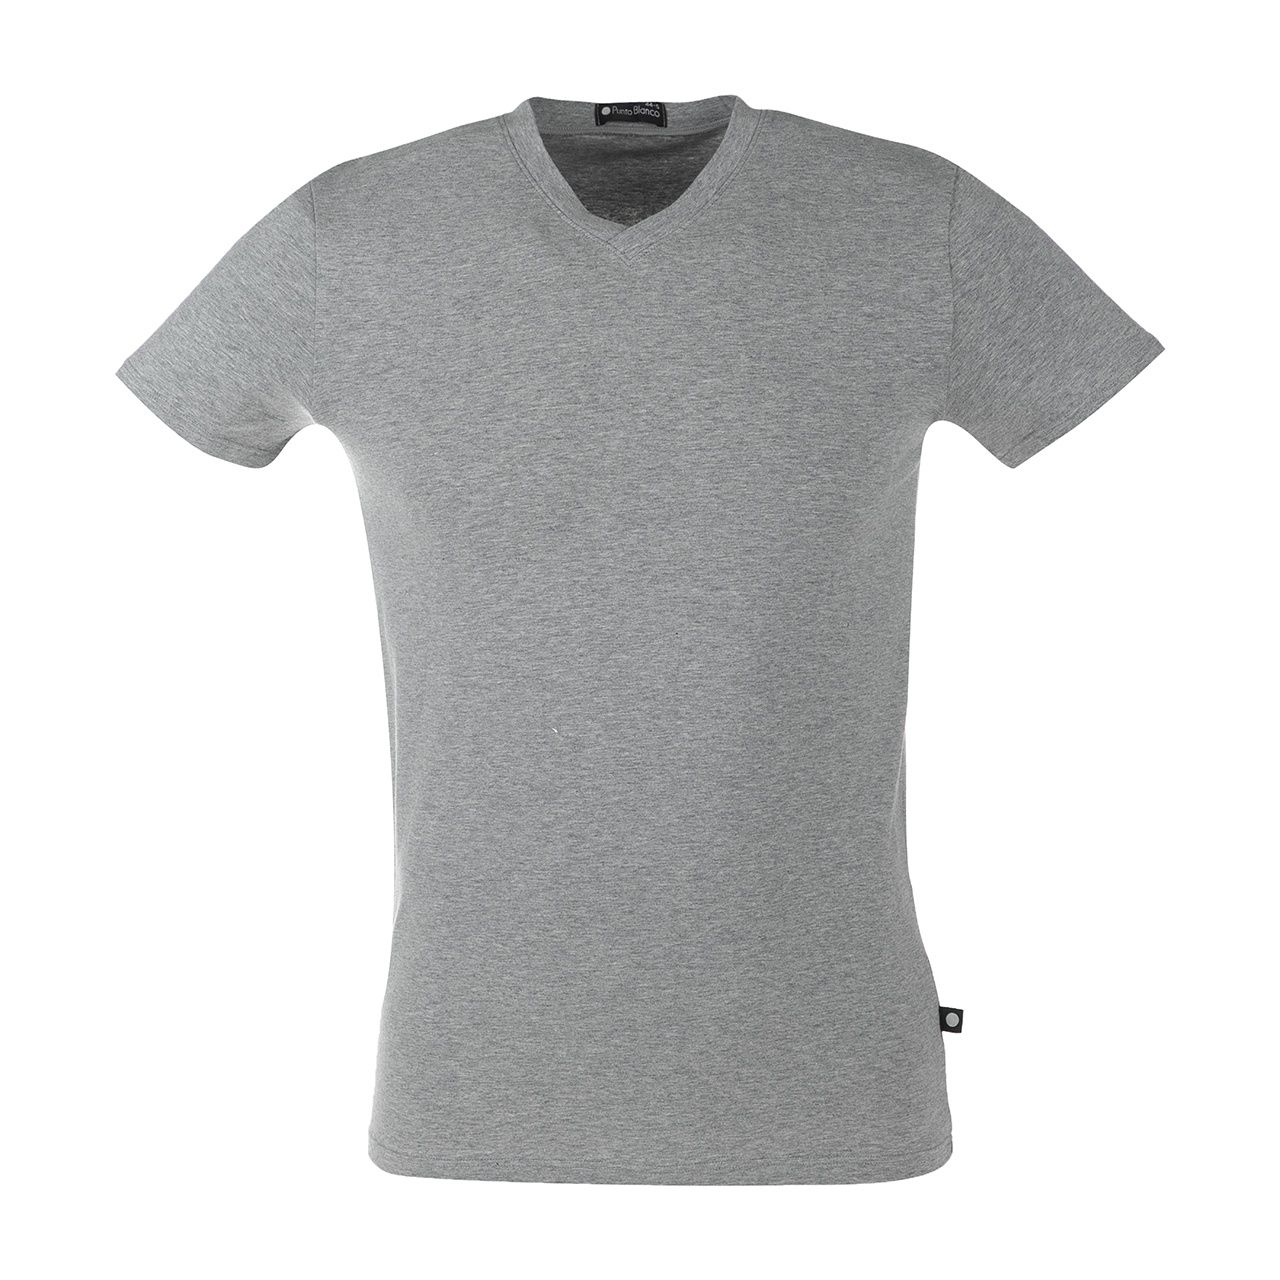 تی شرت مردانه پونتو بلانکو کد 654-20-53384 -  - 1